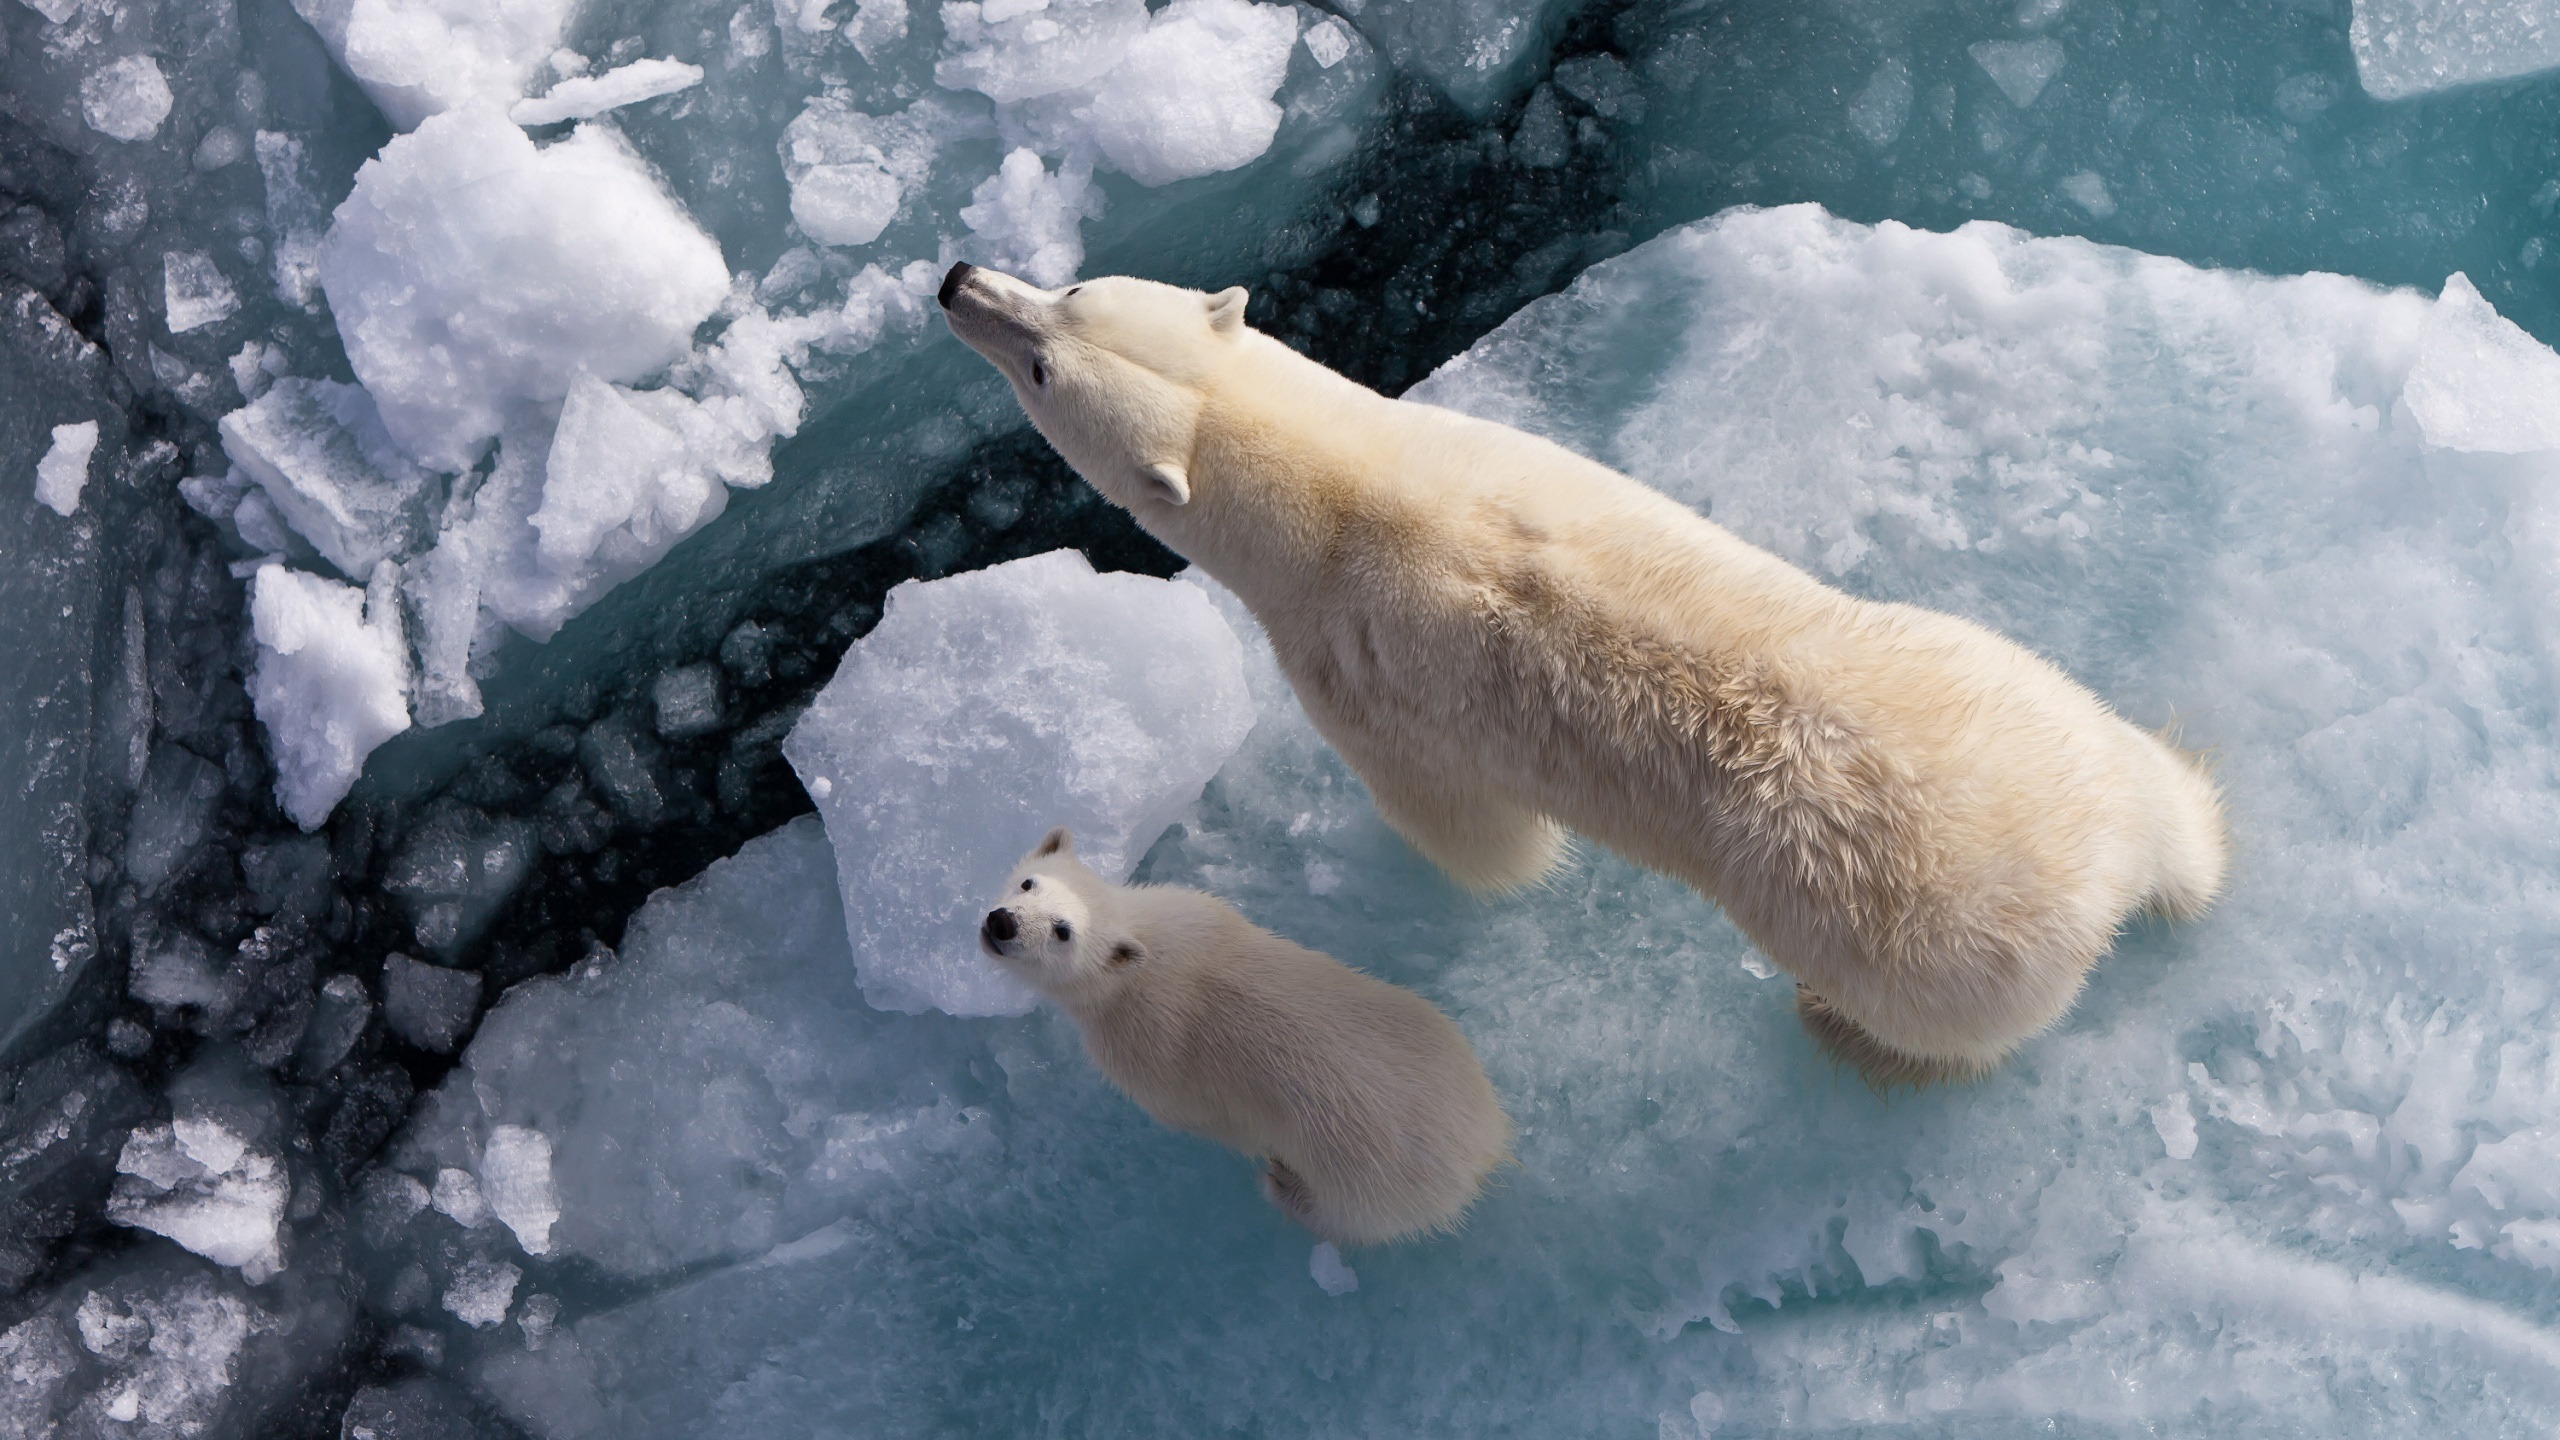 Polar Bears on Ice for 2560x1440 HDTV resolution